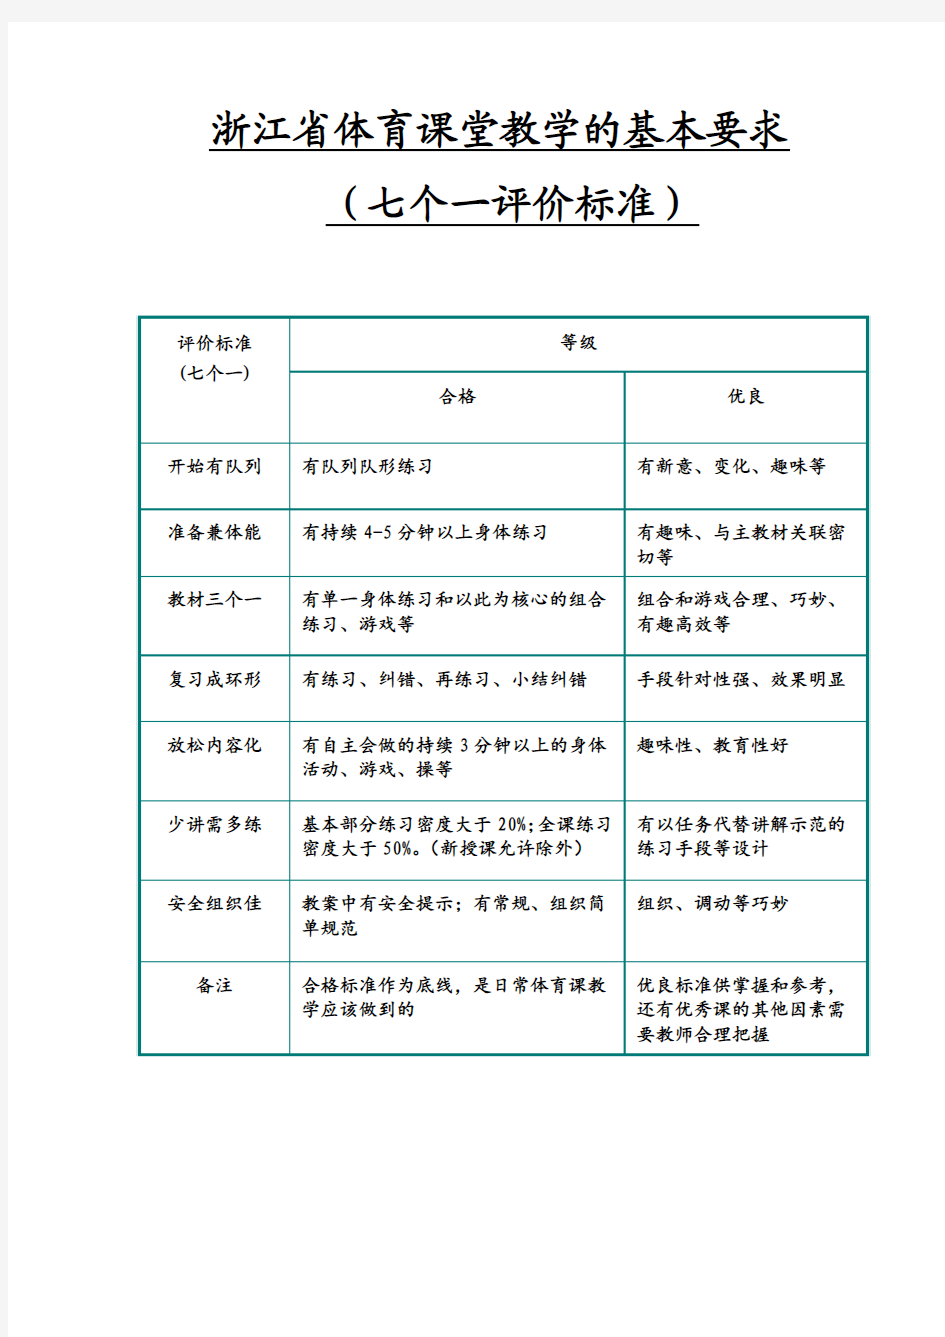 浙江省体育课堂教学的基本要求(七个一评价标准)